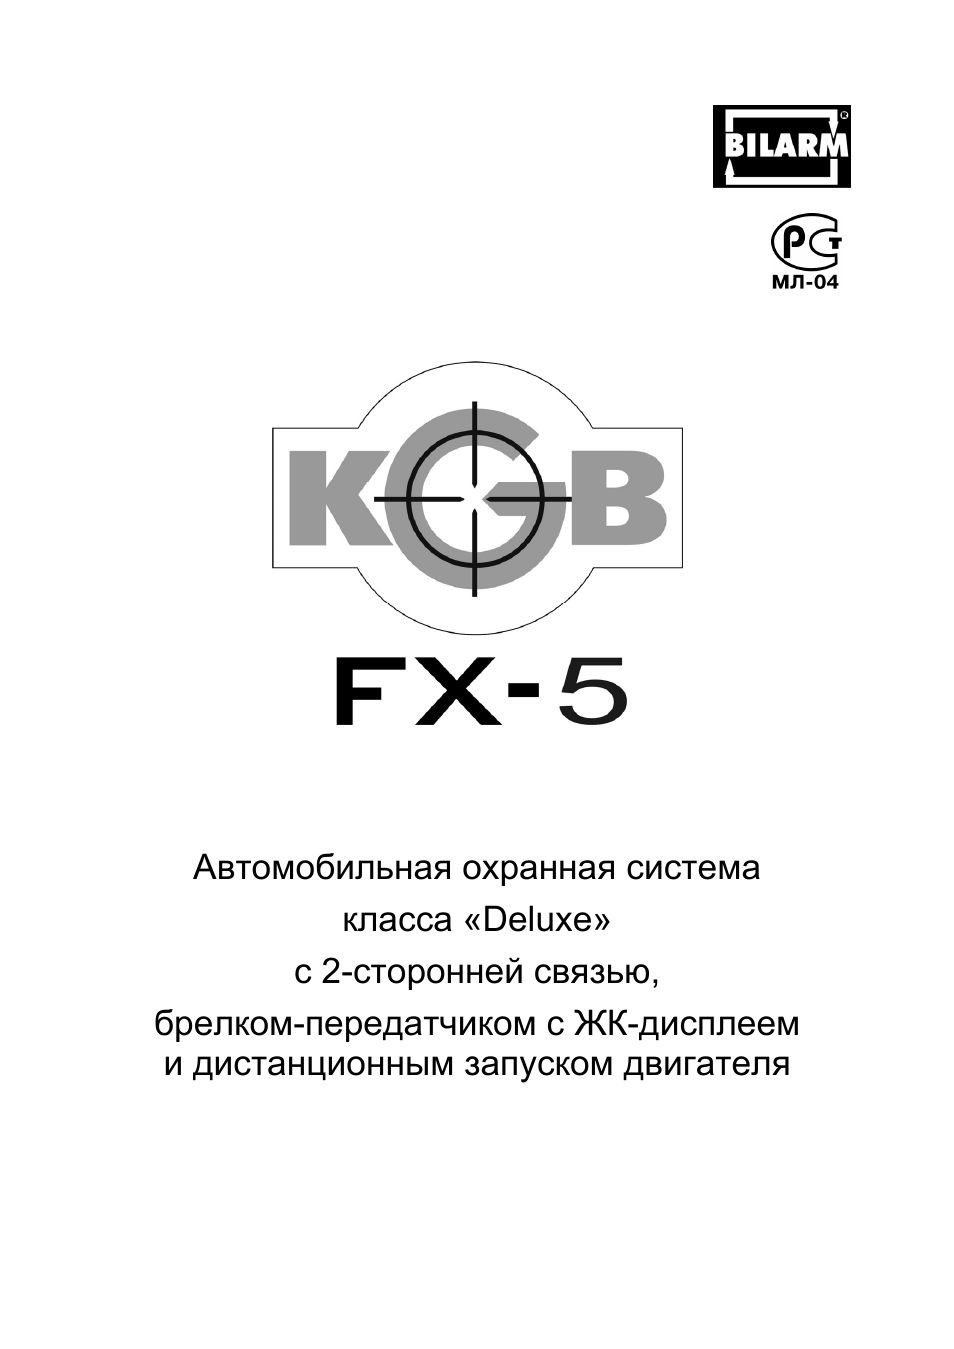 Сигнализация kgb tfx-5 инструкция – Telegraph